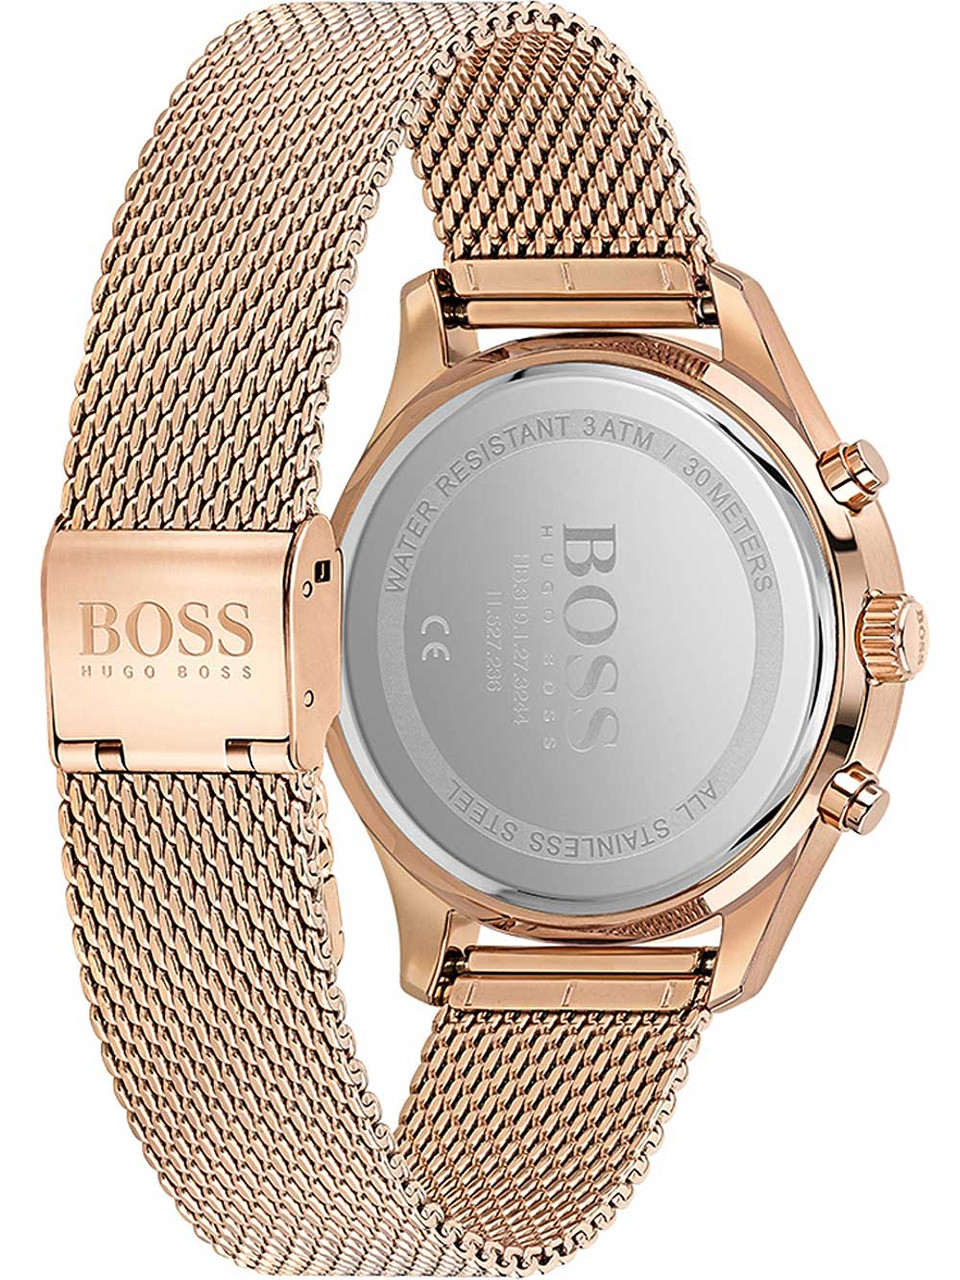 Hugo Boss 1513806 Associate - | Watches chronograph ATM 5 owlica 42mm Genuine